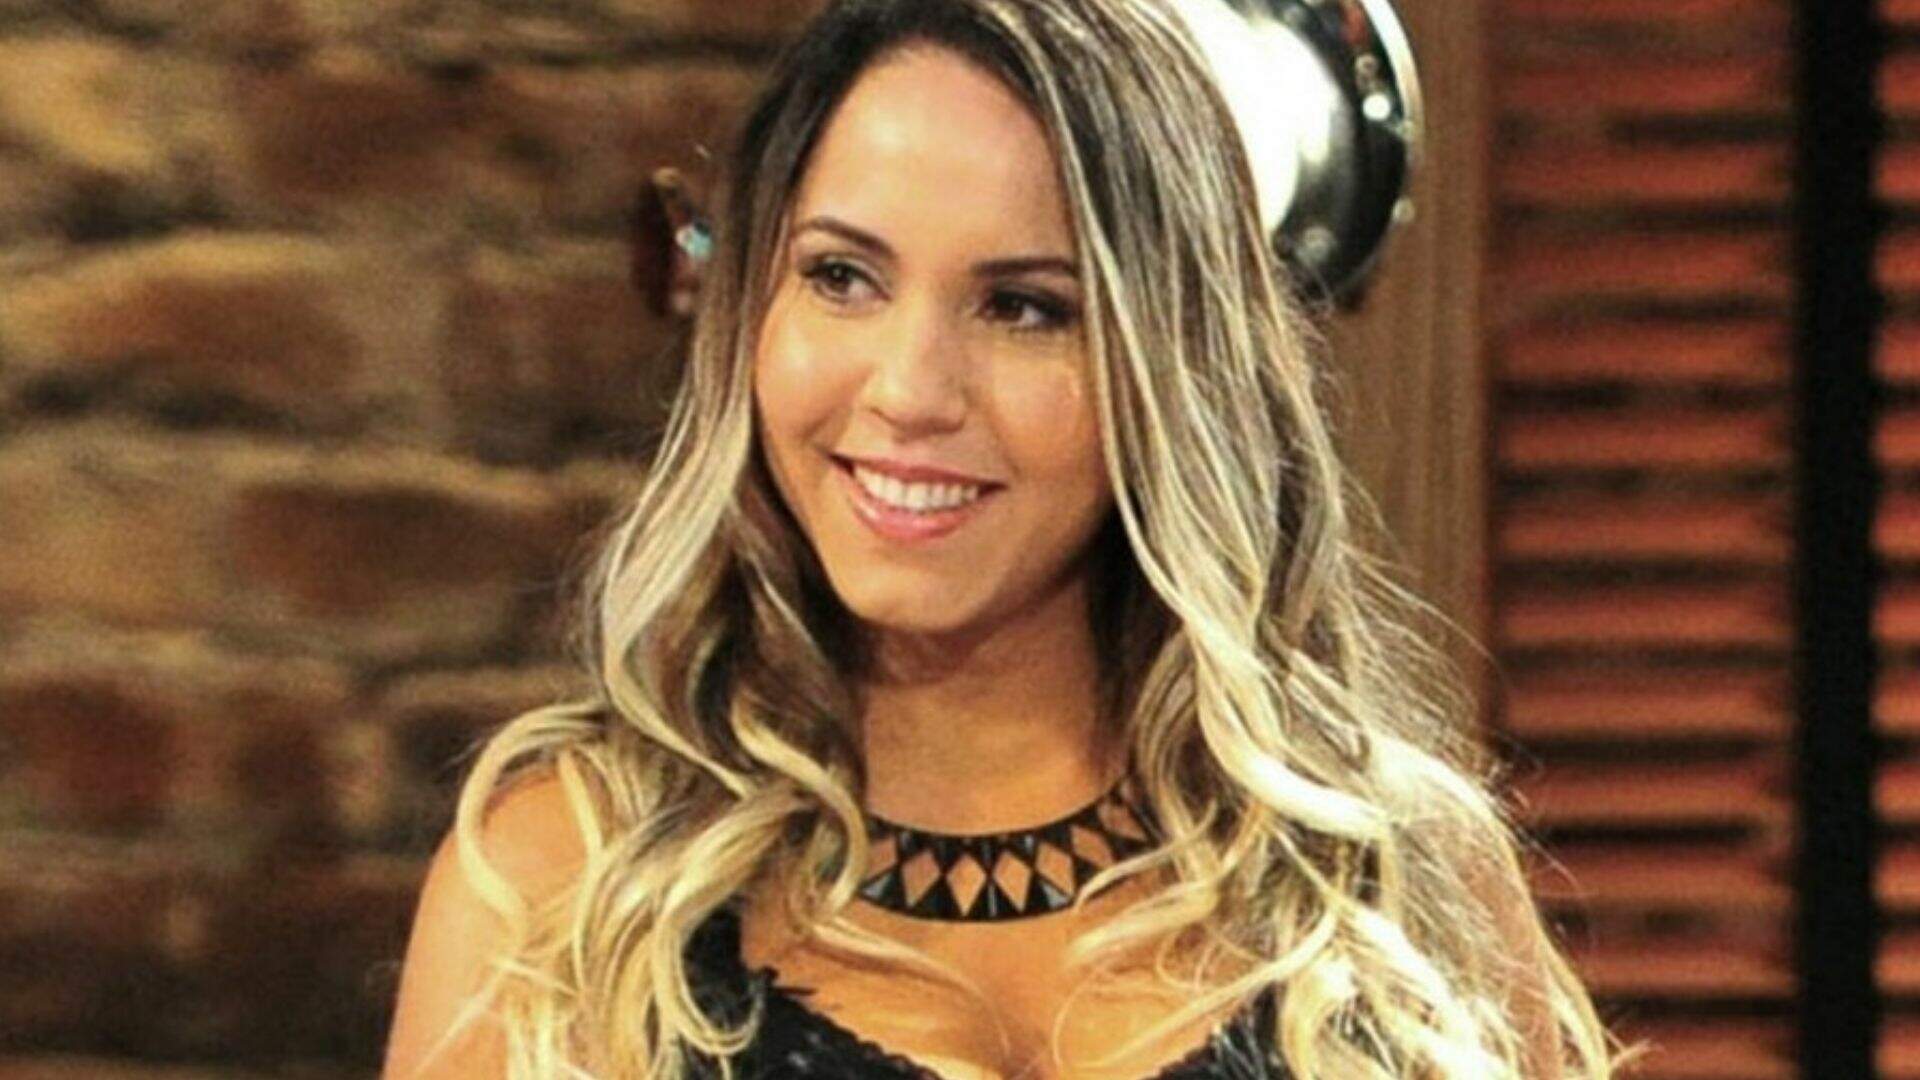 Mulher Melão vende vídeo tomando banho e gera polêmica na internet - Metropolitana FM